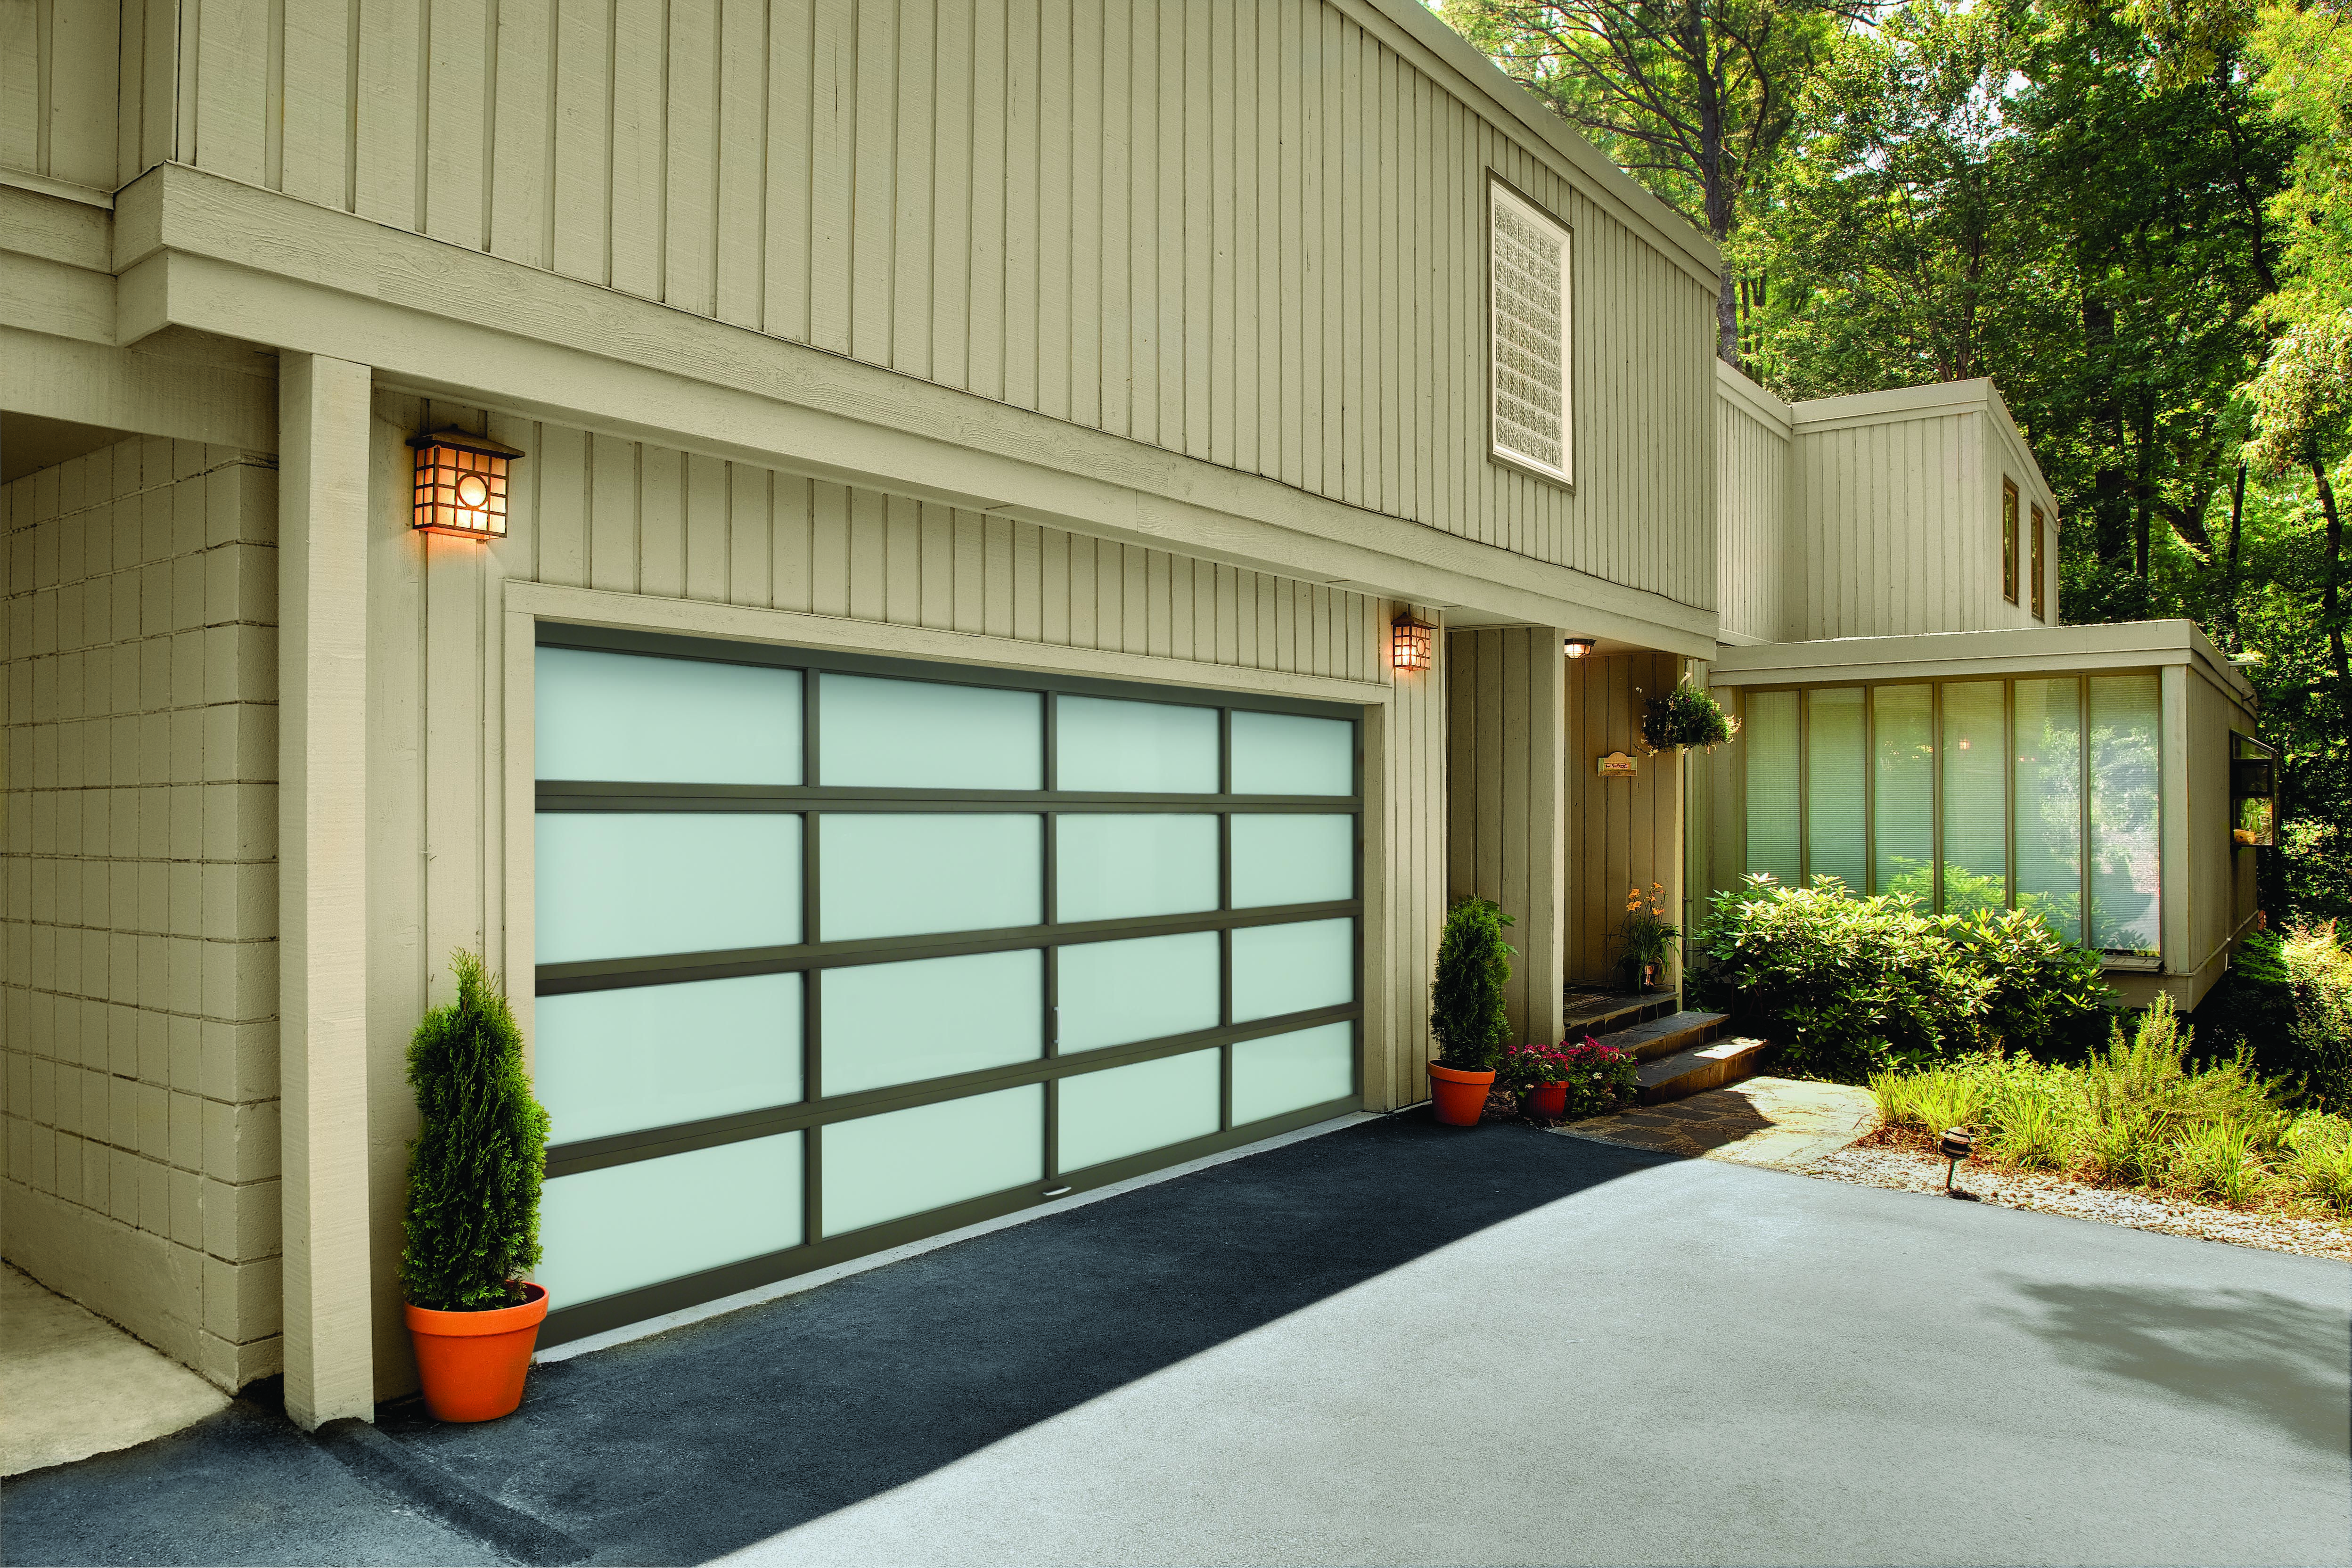 White Modern Insulated Glass Alumium Garage Door